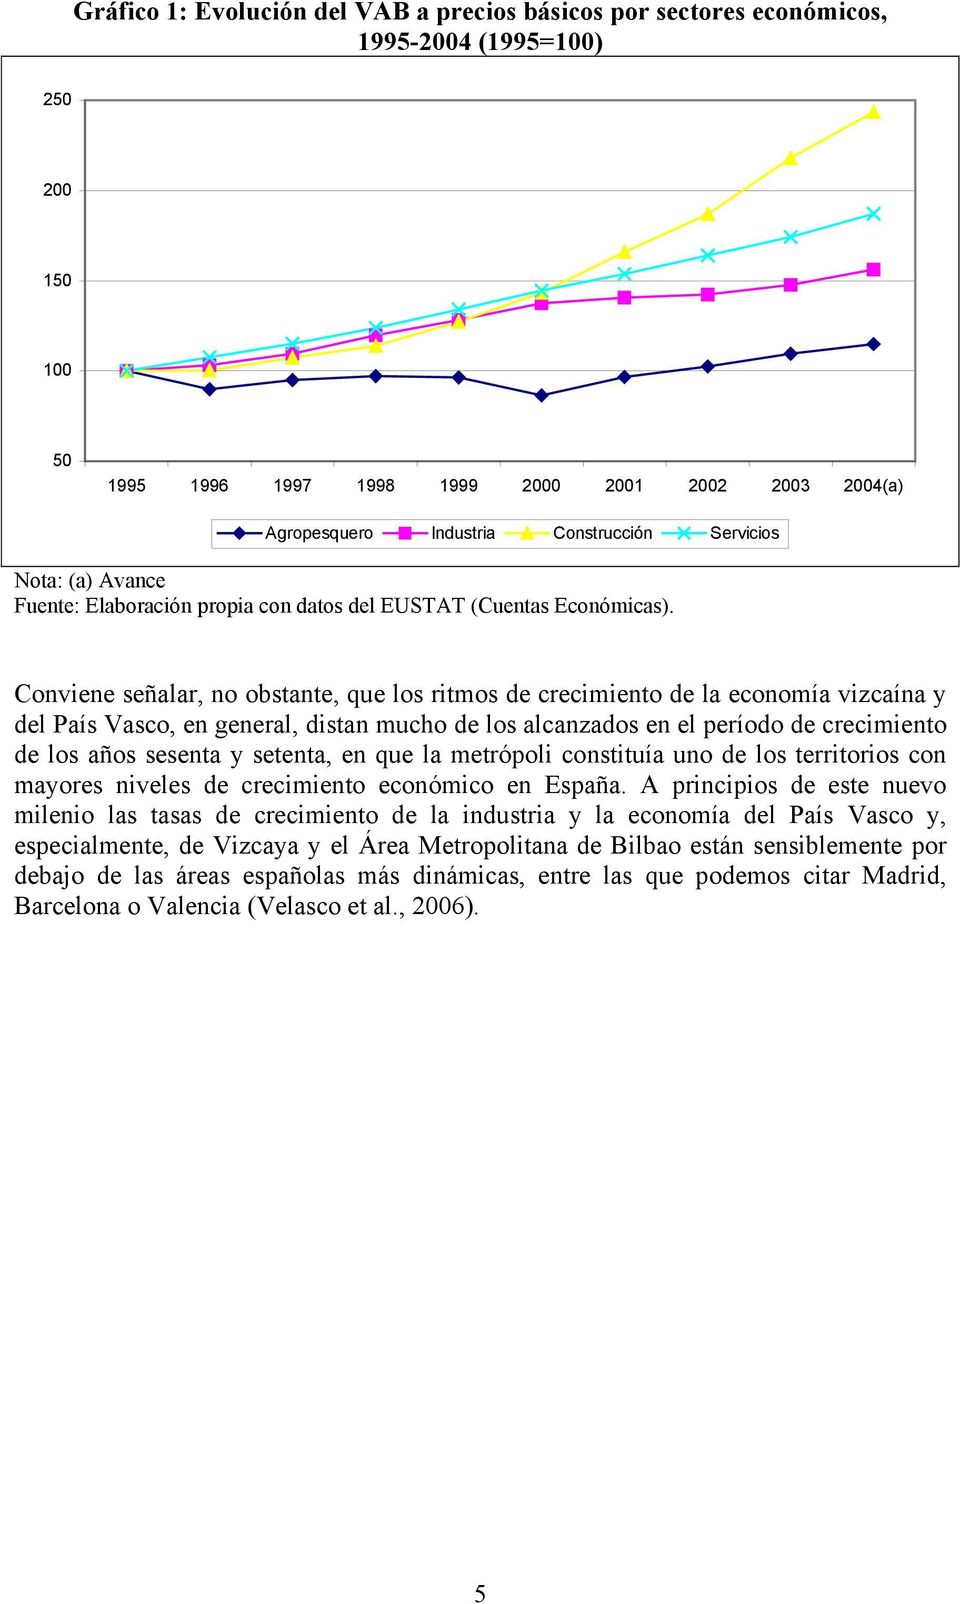 Conviene señalar, no obstante, que los ritmos de crecimiento de la economía vizcaína y del País Vasco, en general, distan mucho de los alcanzados en el período de crecimiento de los años sesenta y